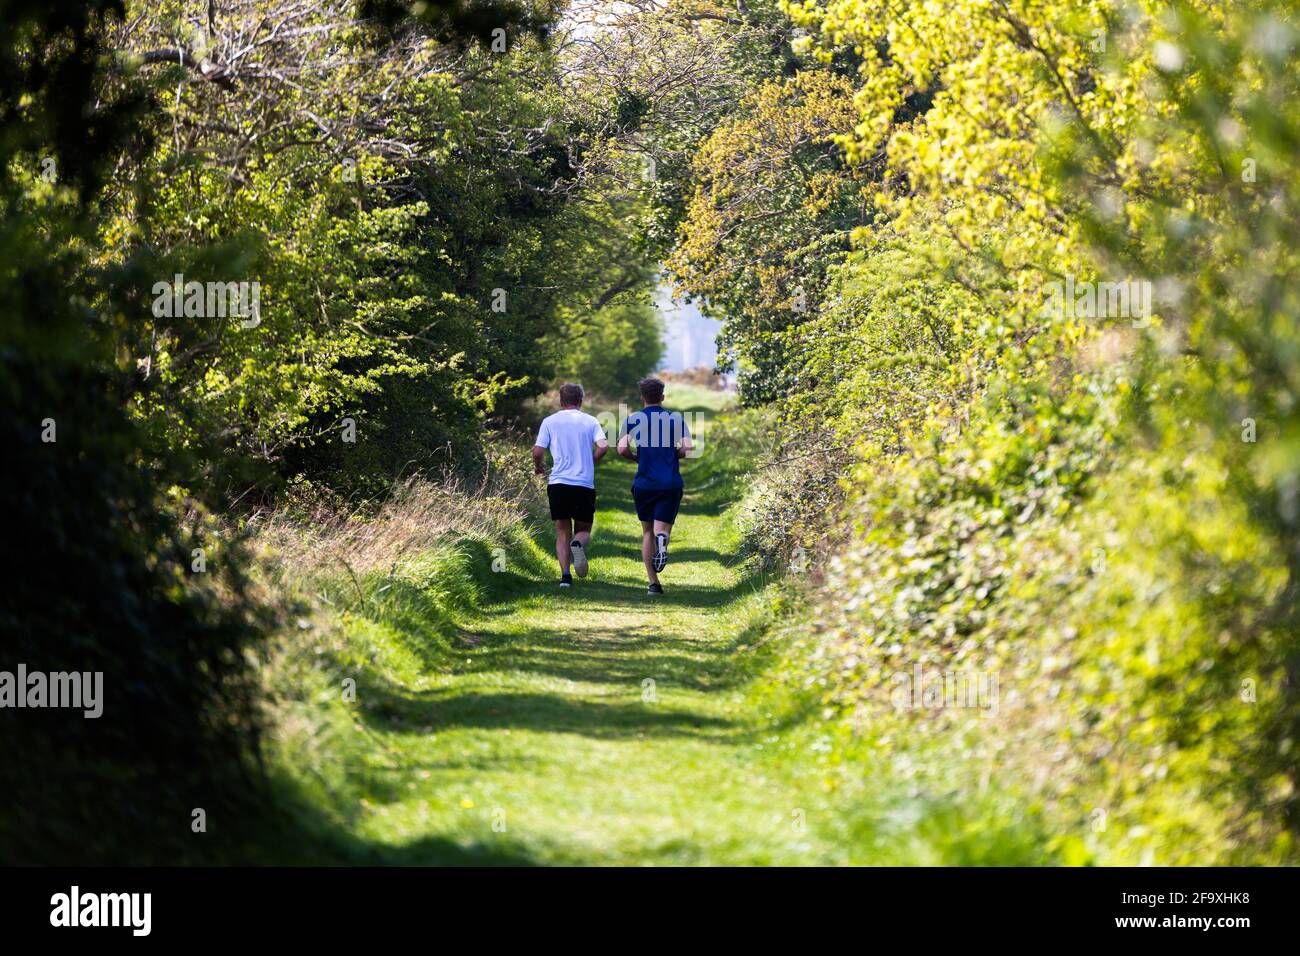 2 mâles inconnus qui jogging dans la campagne pendant l'été. Ils  s'éloignent de la caméra. Exercice, vie saine, concept de style de vie  Photo Stock - Alamy